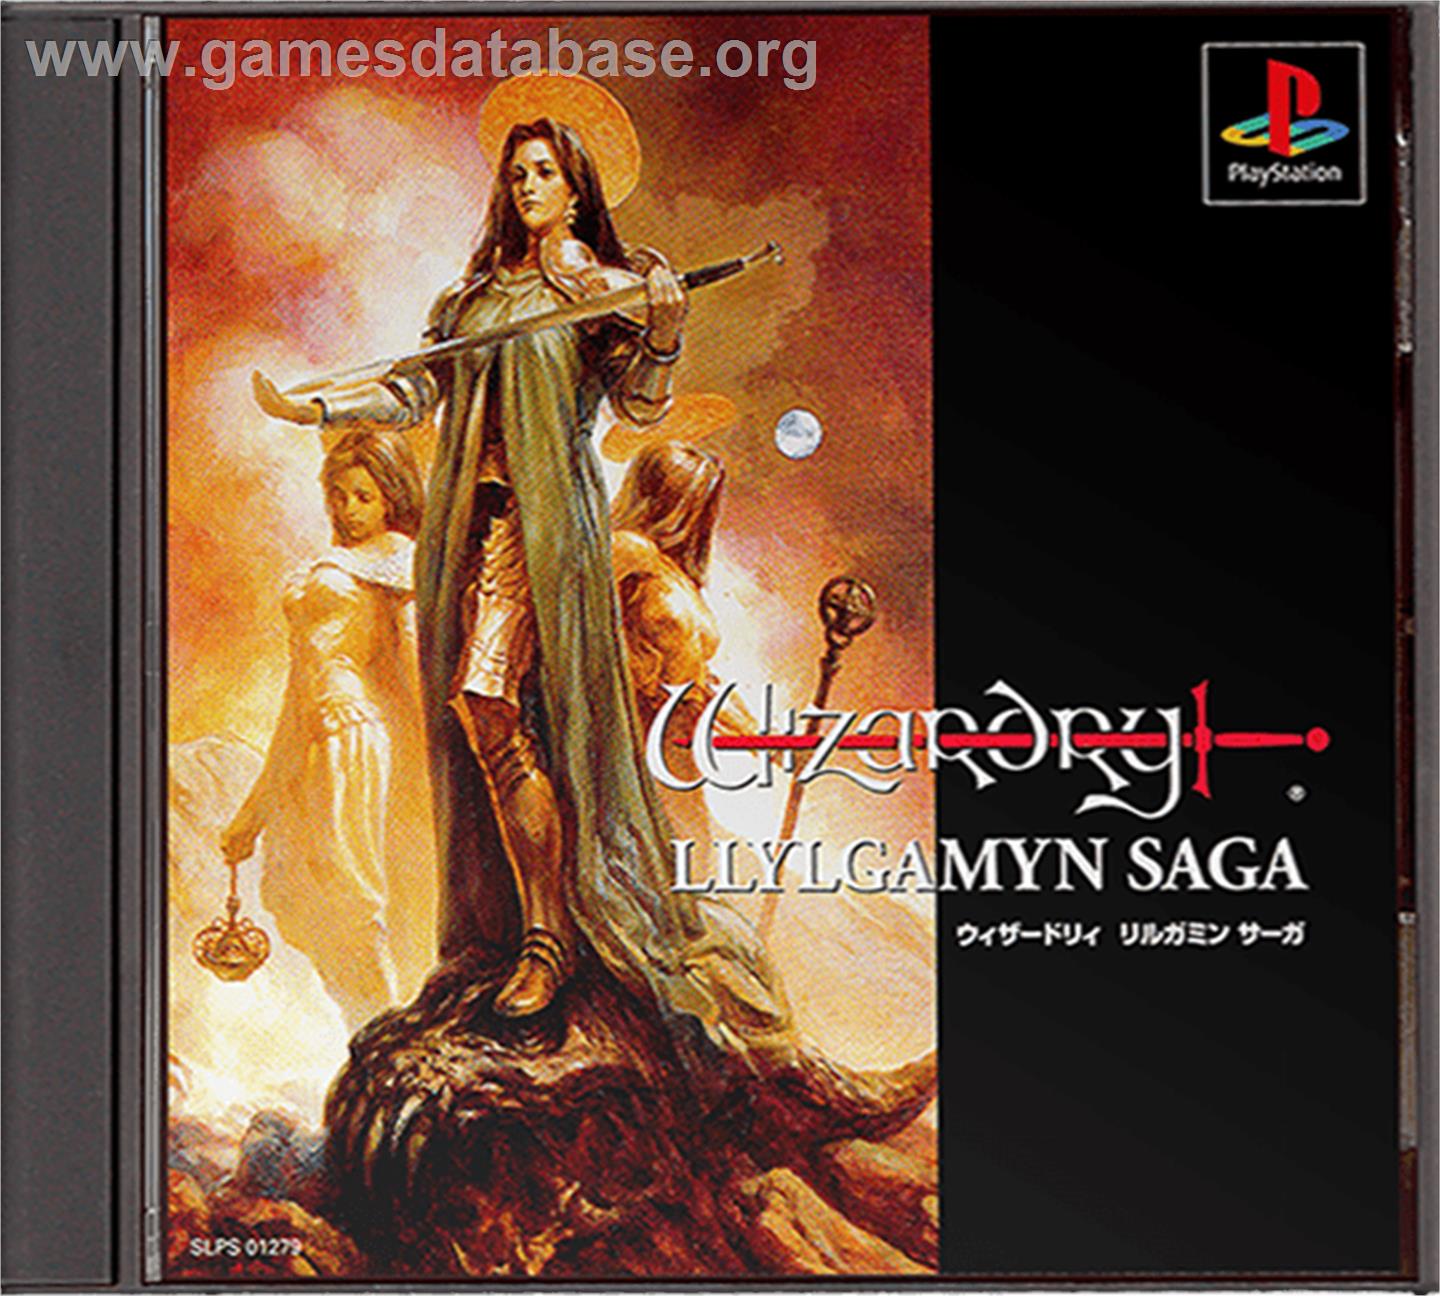 Wizardry: Llylgamyn Saga - Sony Playstation - Artwork - Box